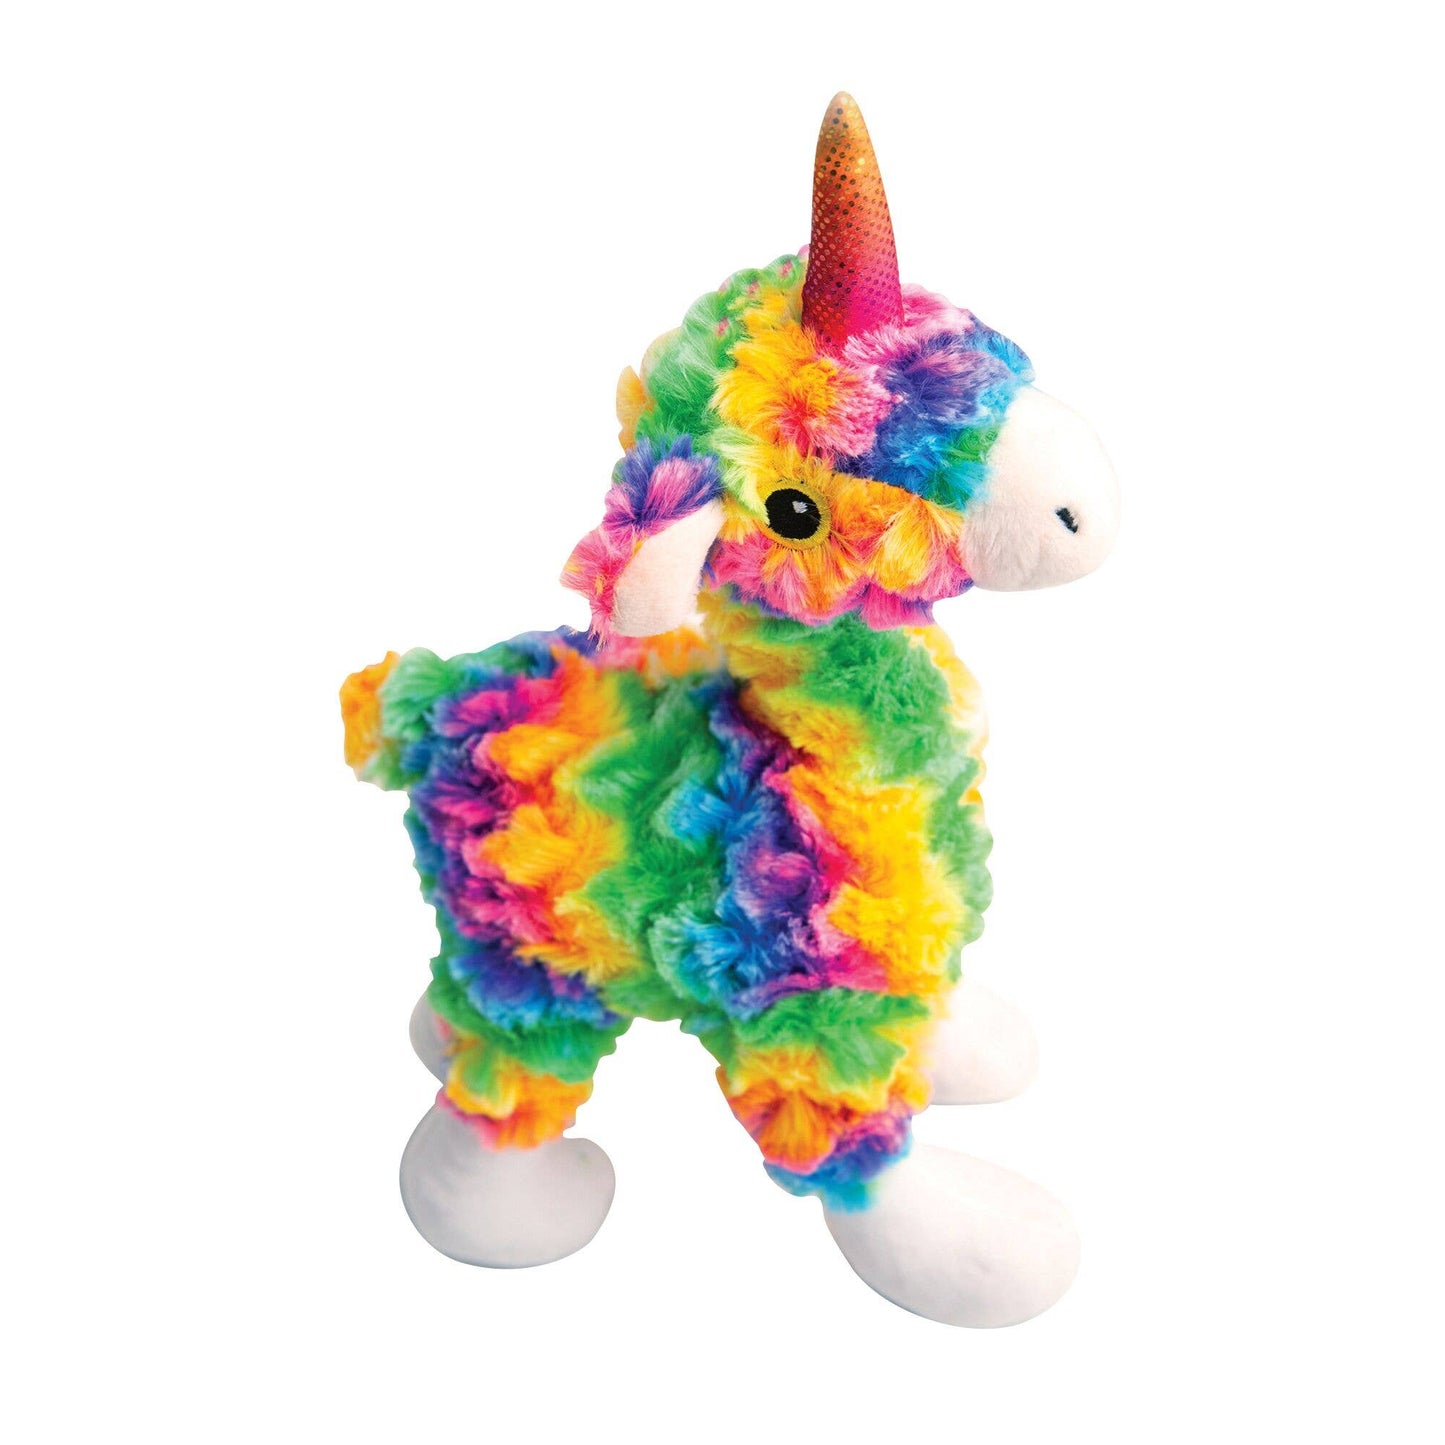 Llama Mia Dog Toy